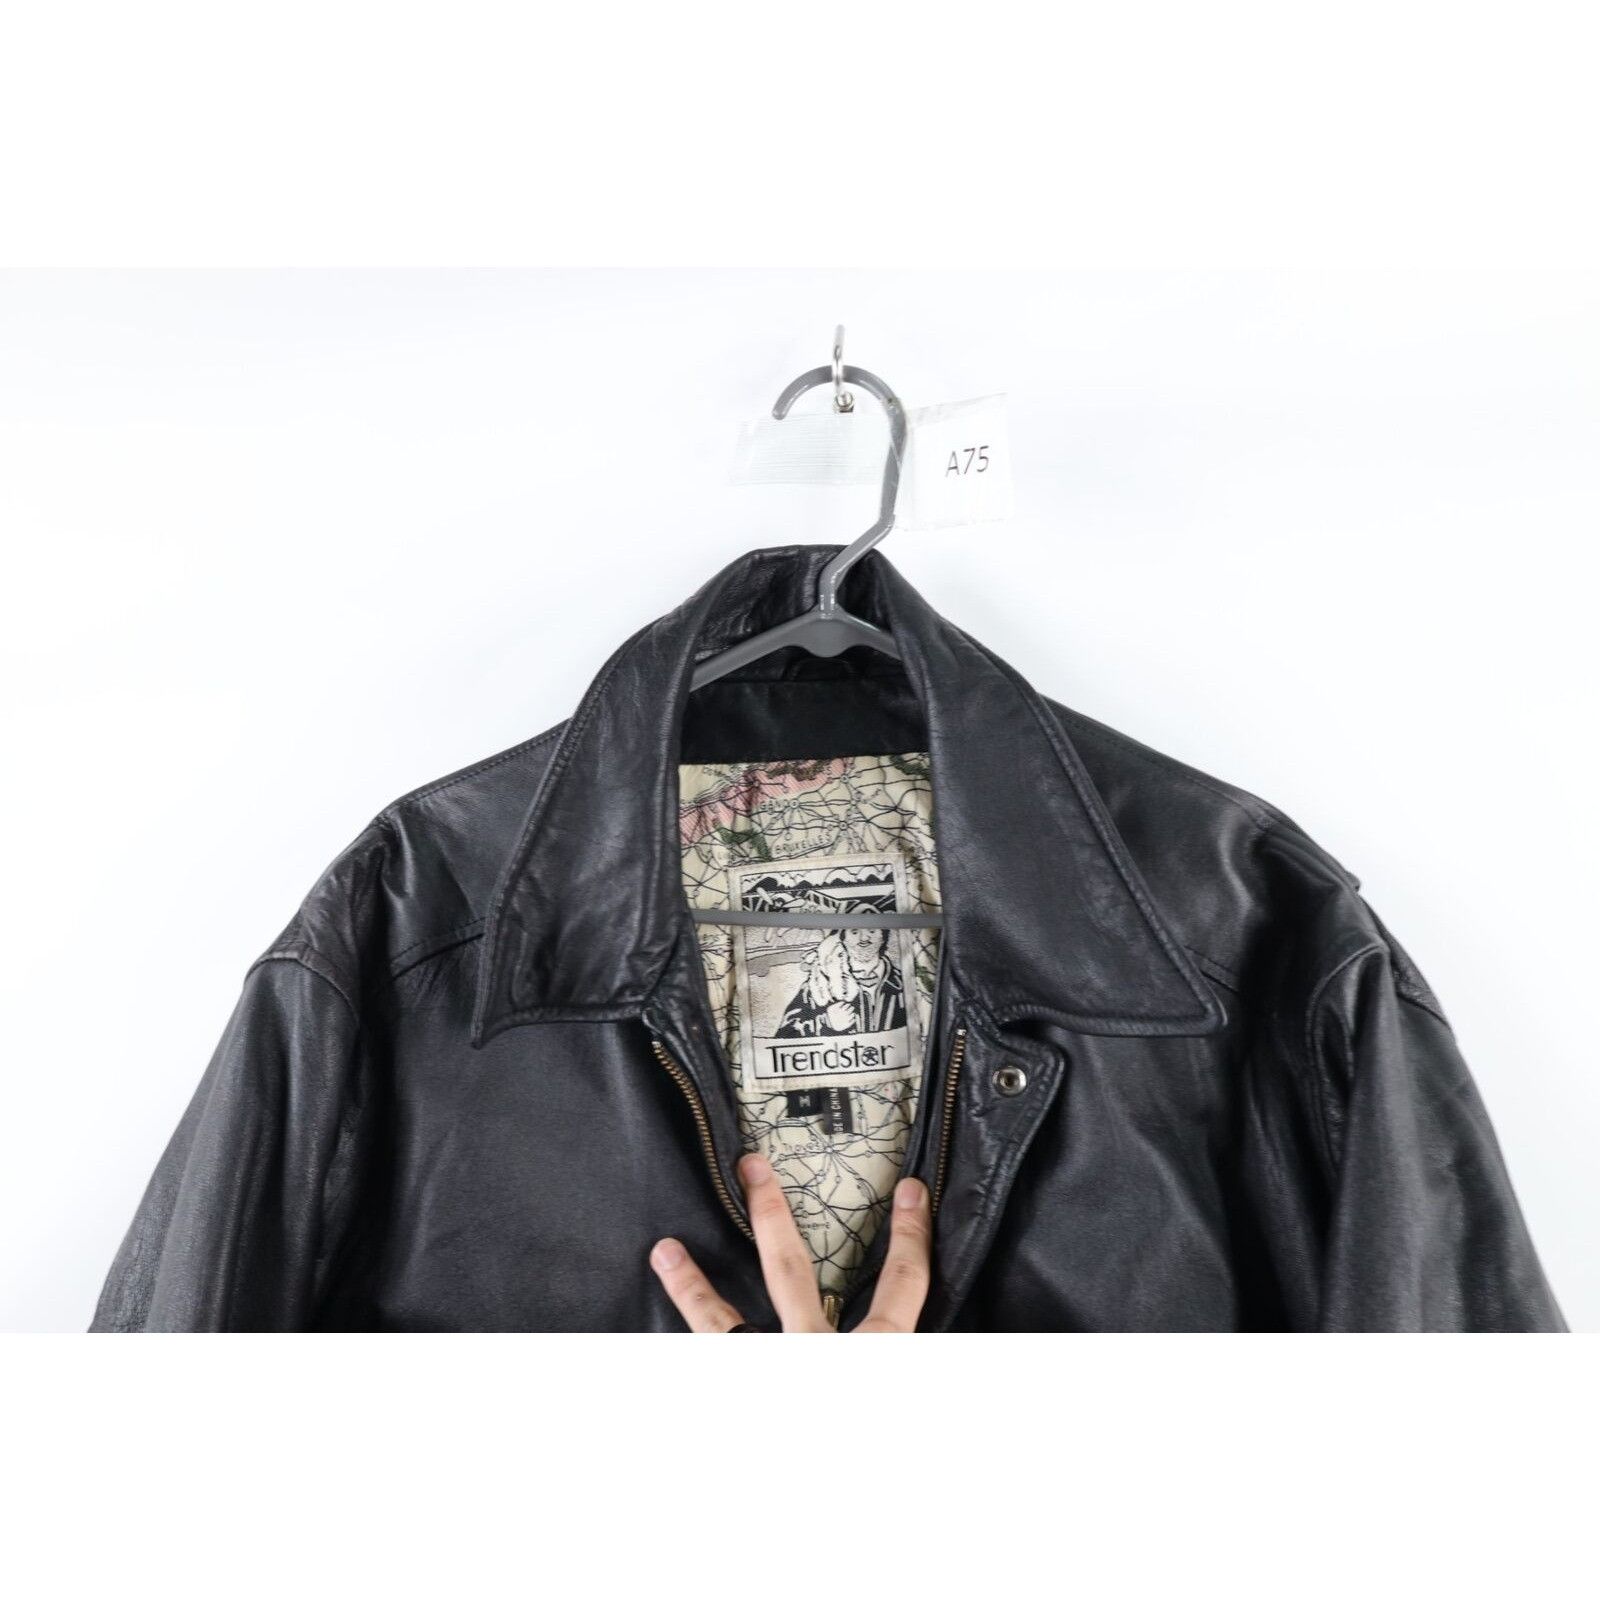 Vintage Vintage Surprise Attack Nuke Japan Souvenir Leather Jacket Size US M / EU 48-50 / 2 - 7 Thumbnail